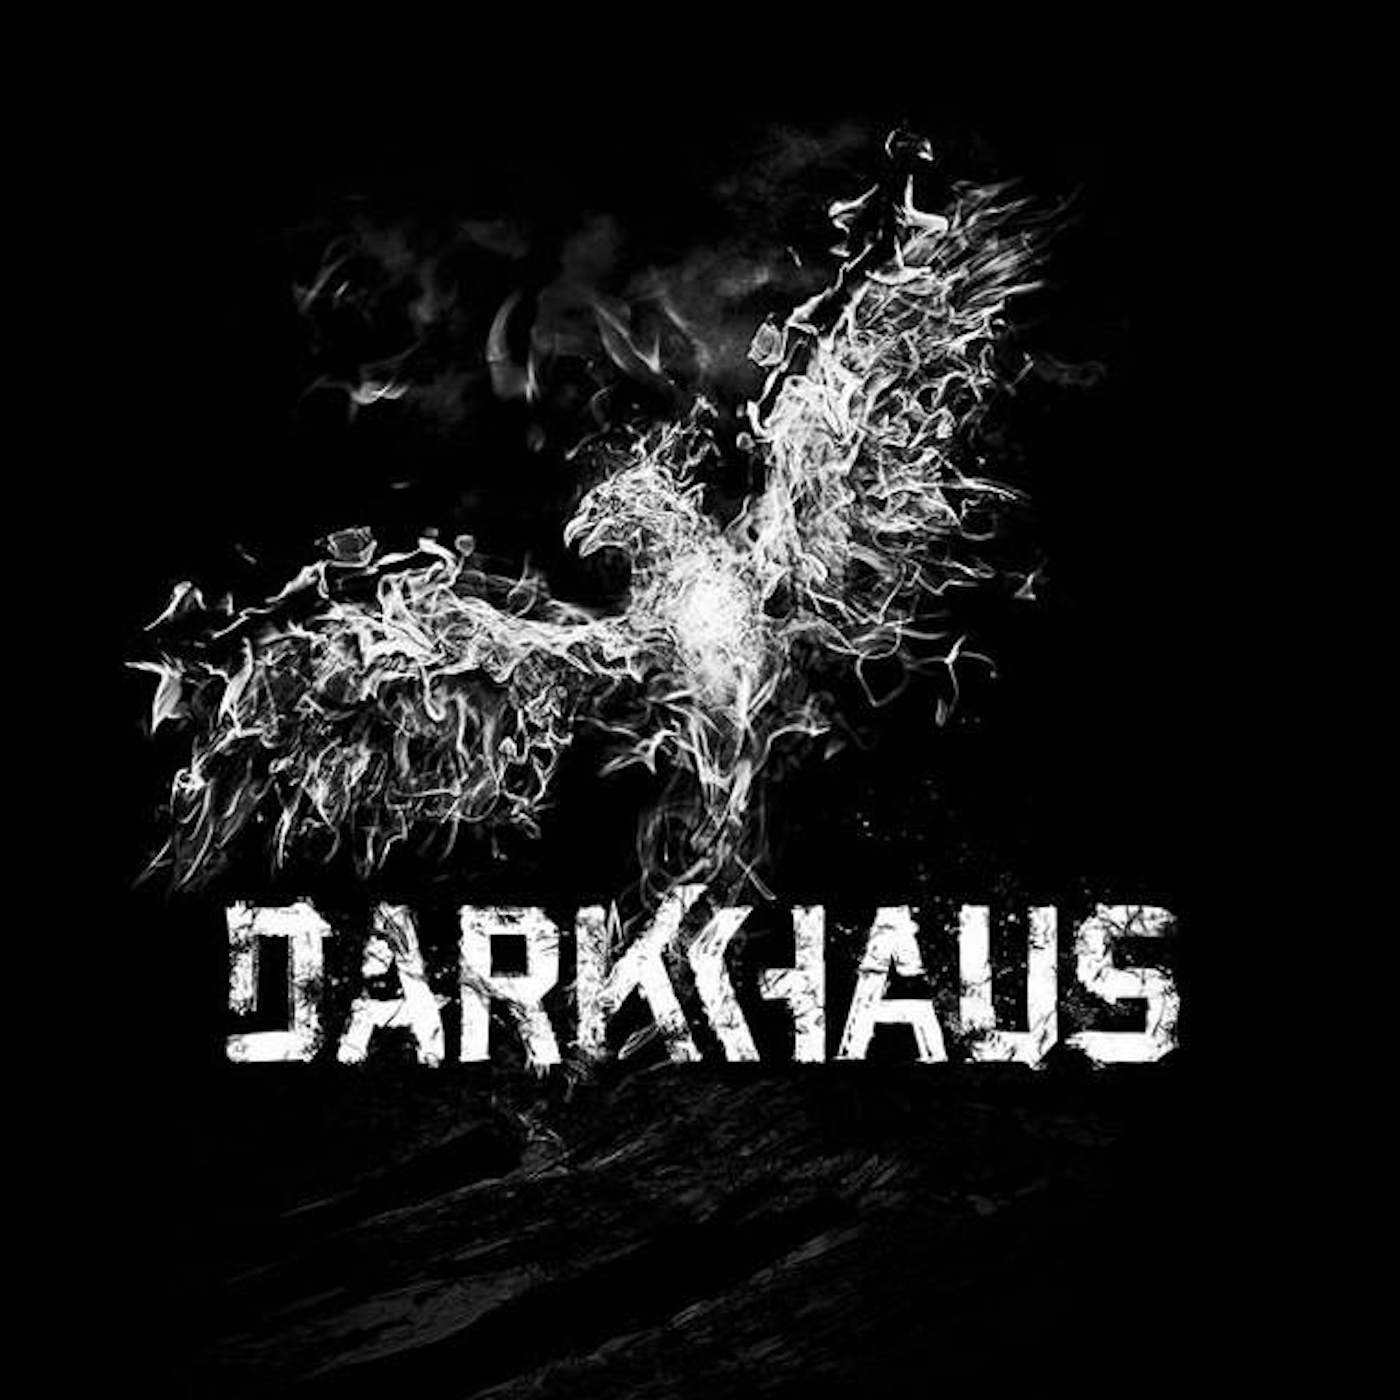 Darkhaus